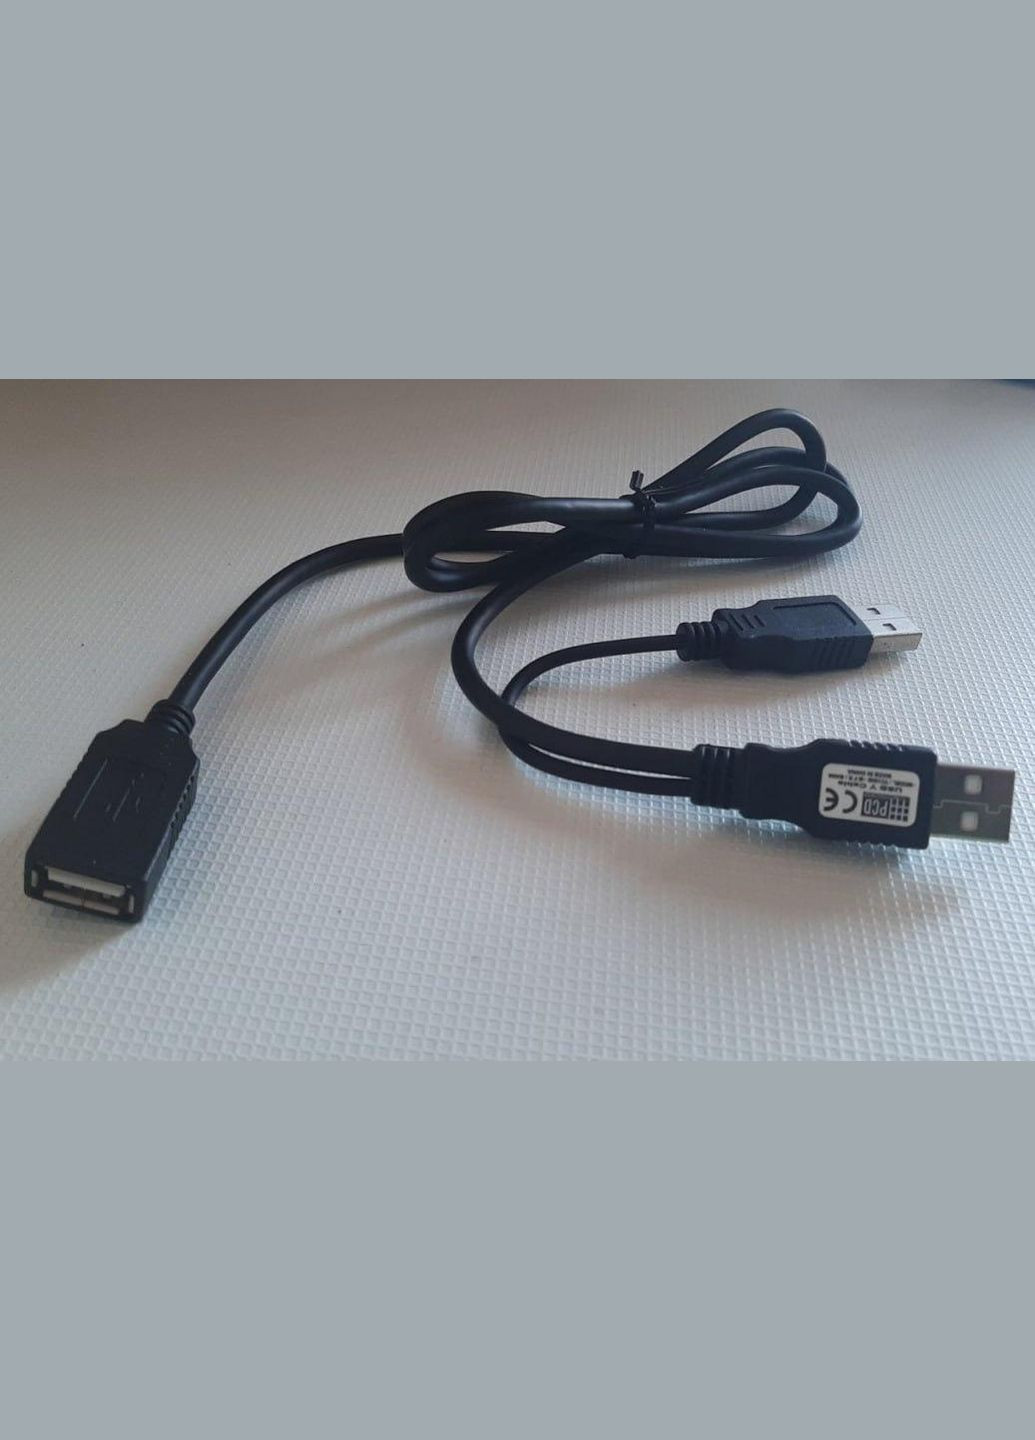 Yобразный USB кабель 2 папы - 1 мама Grand (279826789)